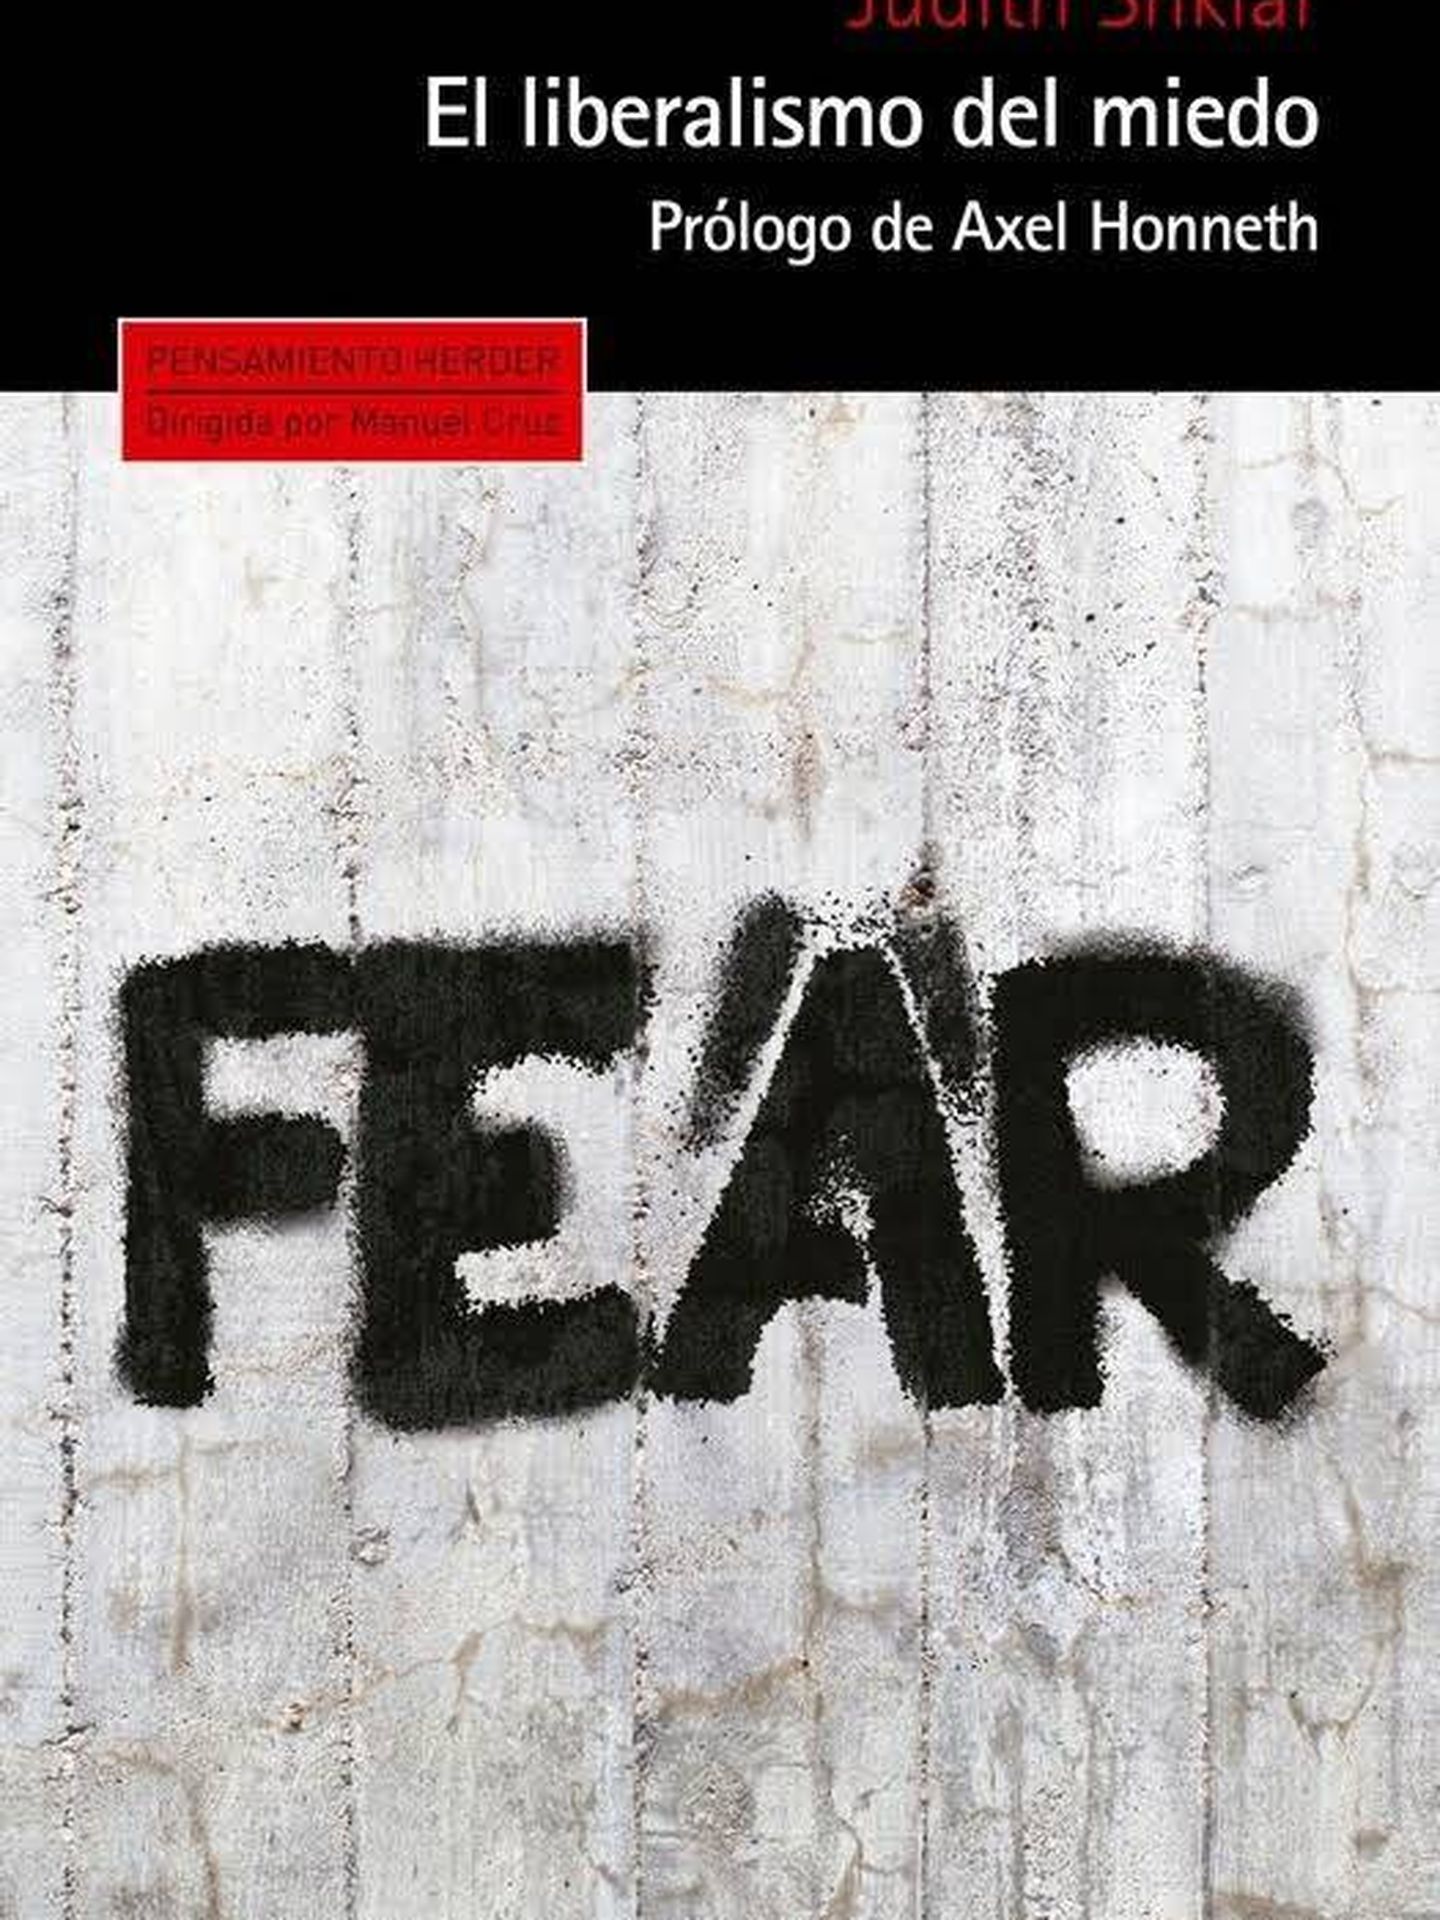 'El liberalismo del miedo'